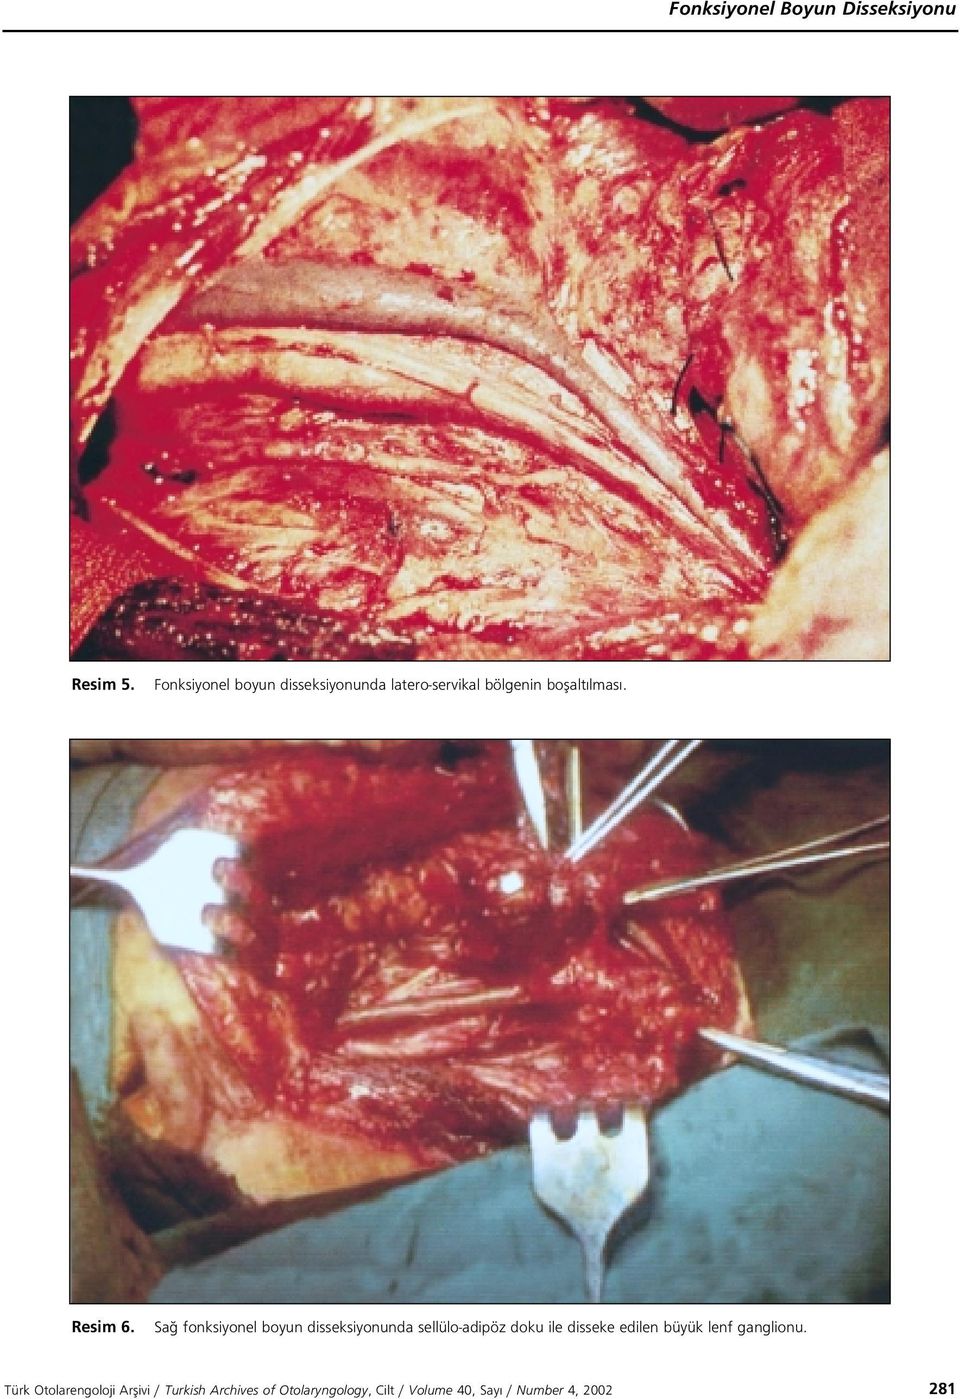 Sa fonksiyonel boyun disseksiyonunda sellülo-adipöz doku ile disseke edilen büyük